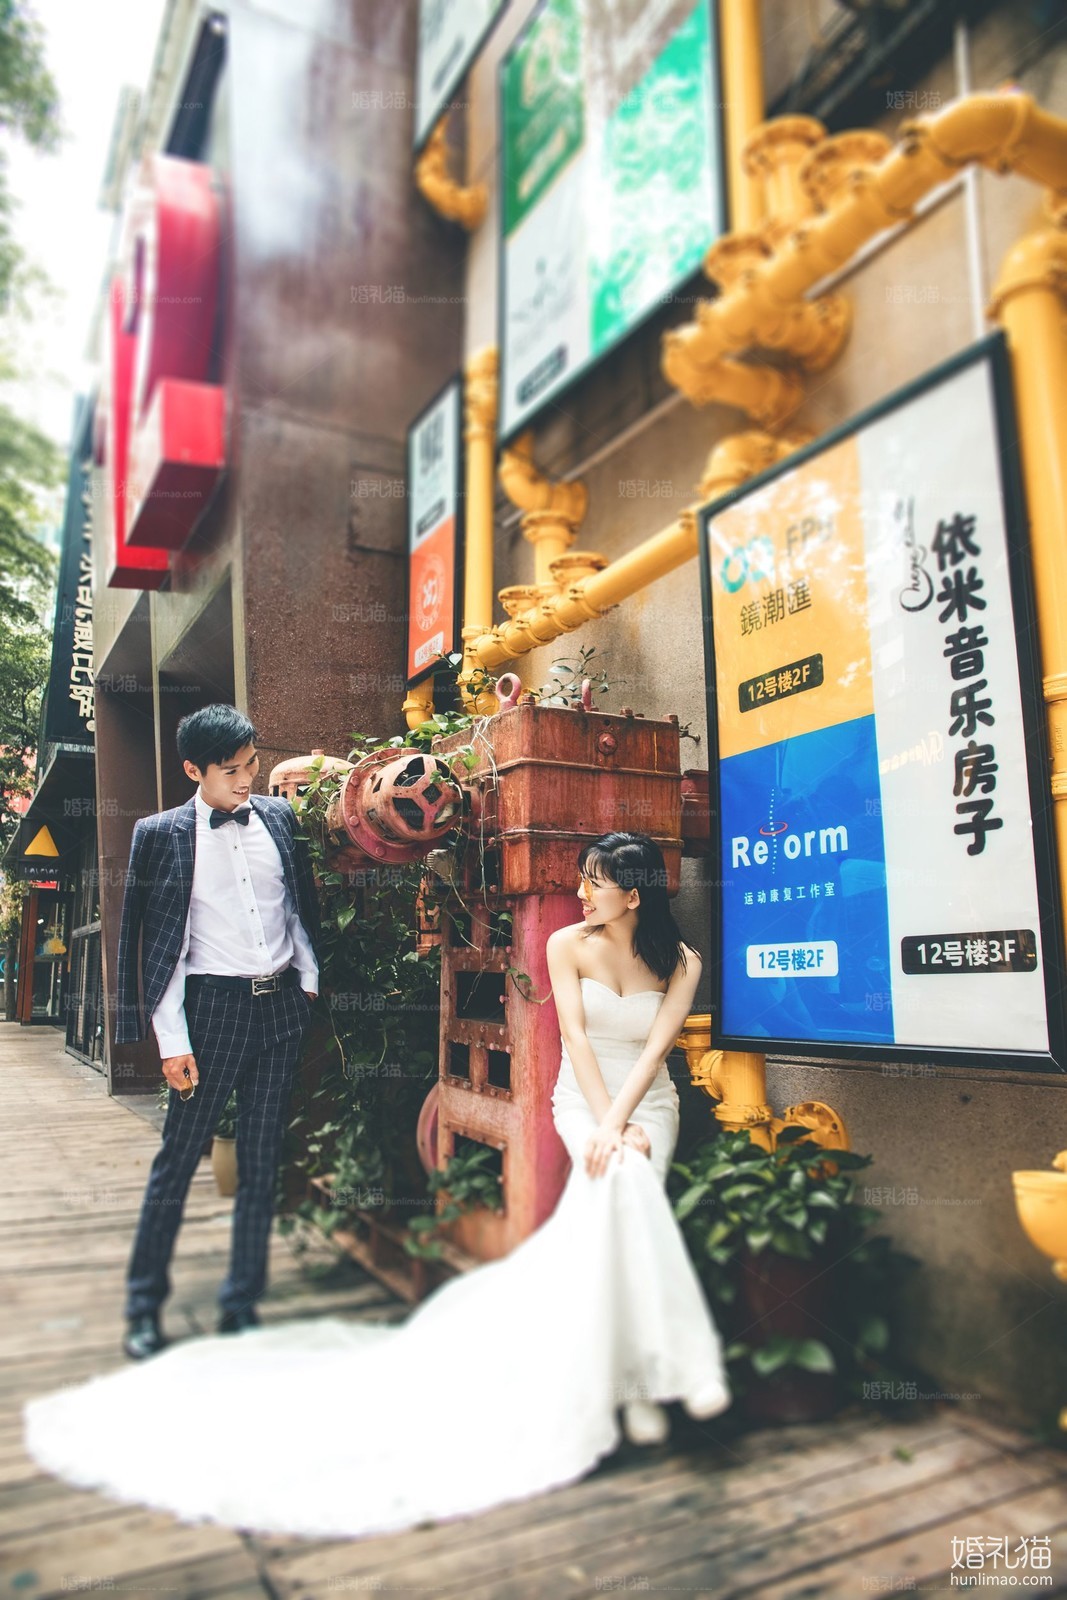 2018年8月广州结婚照,,广州婚纱照,婚纱照图片